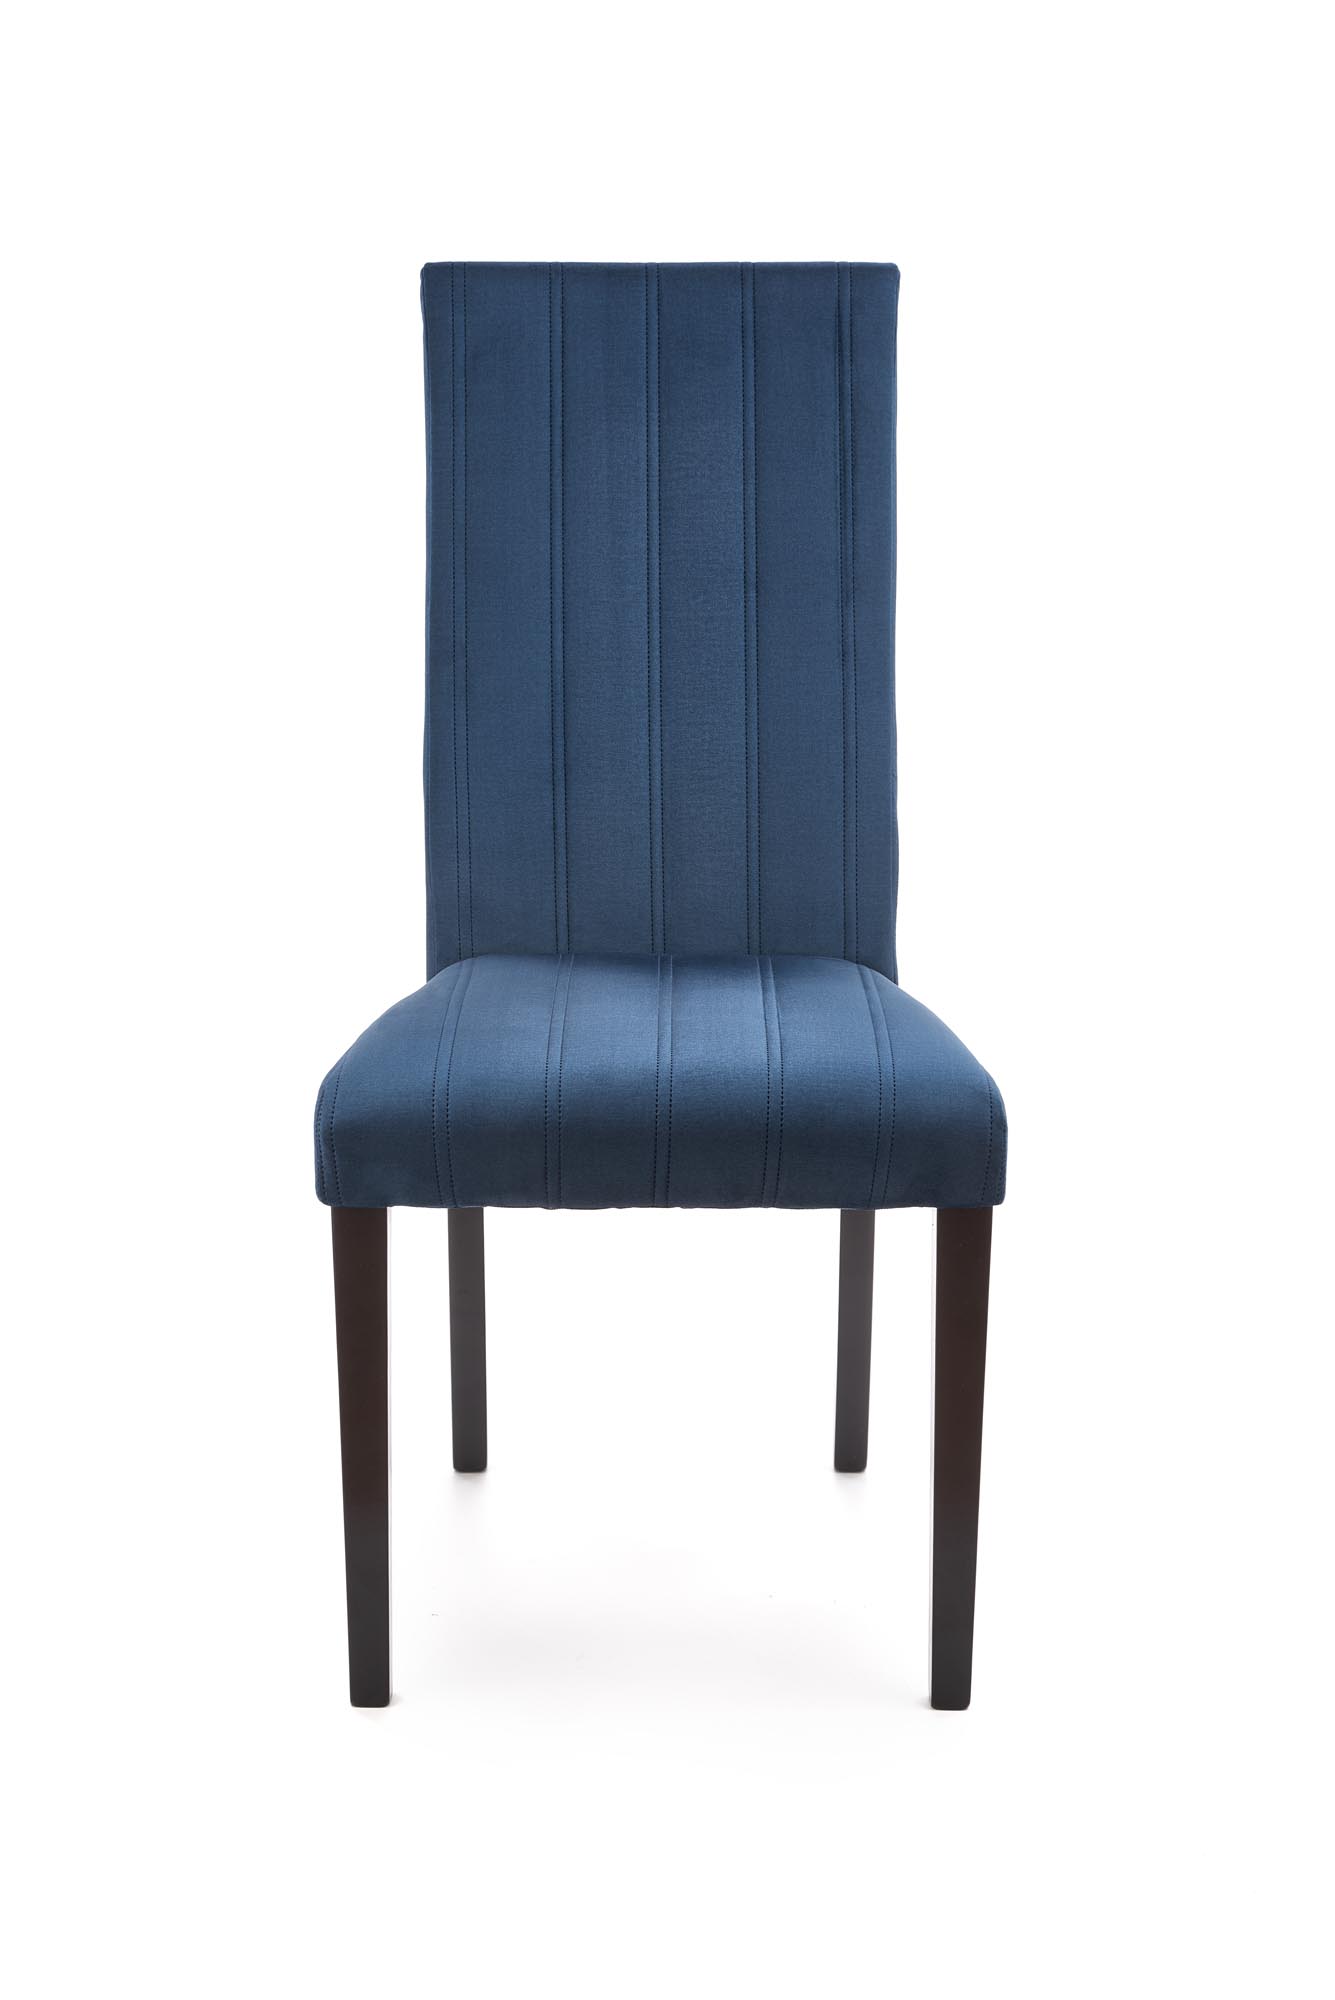 DIEGO 2 krzesło czarny / tap. velvet pikowany Pasy - MONOLITH 77 (granatowy) diego 2 krzesło czarny / tap. velvet pikowany pasy - monolith 77 (granatowy)